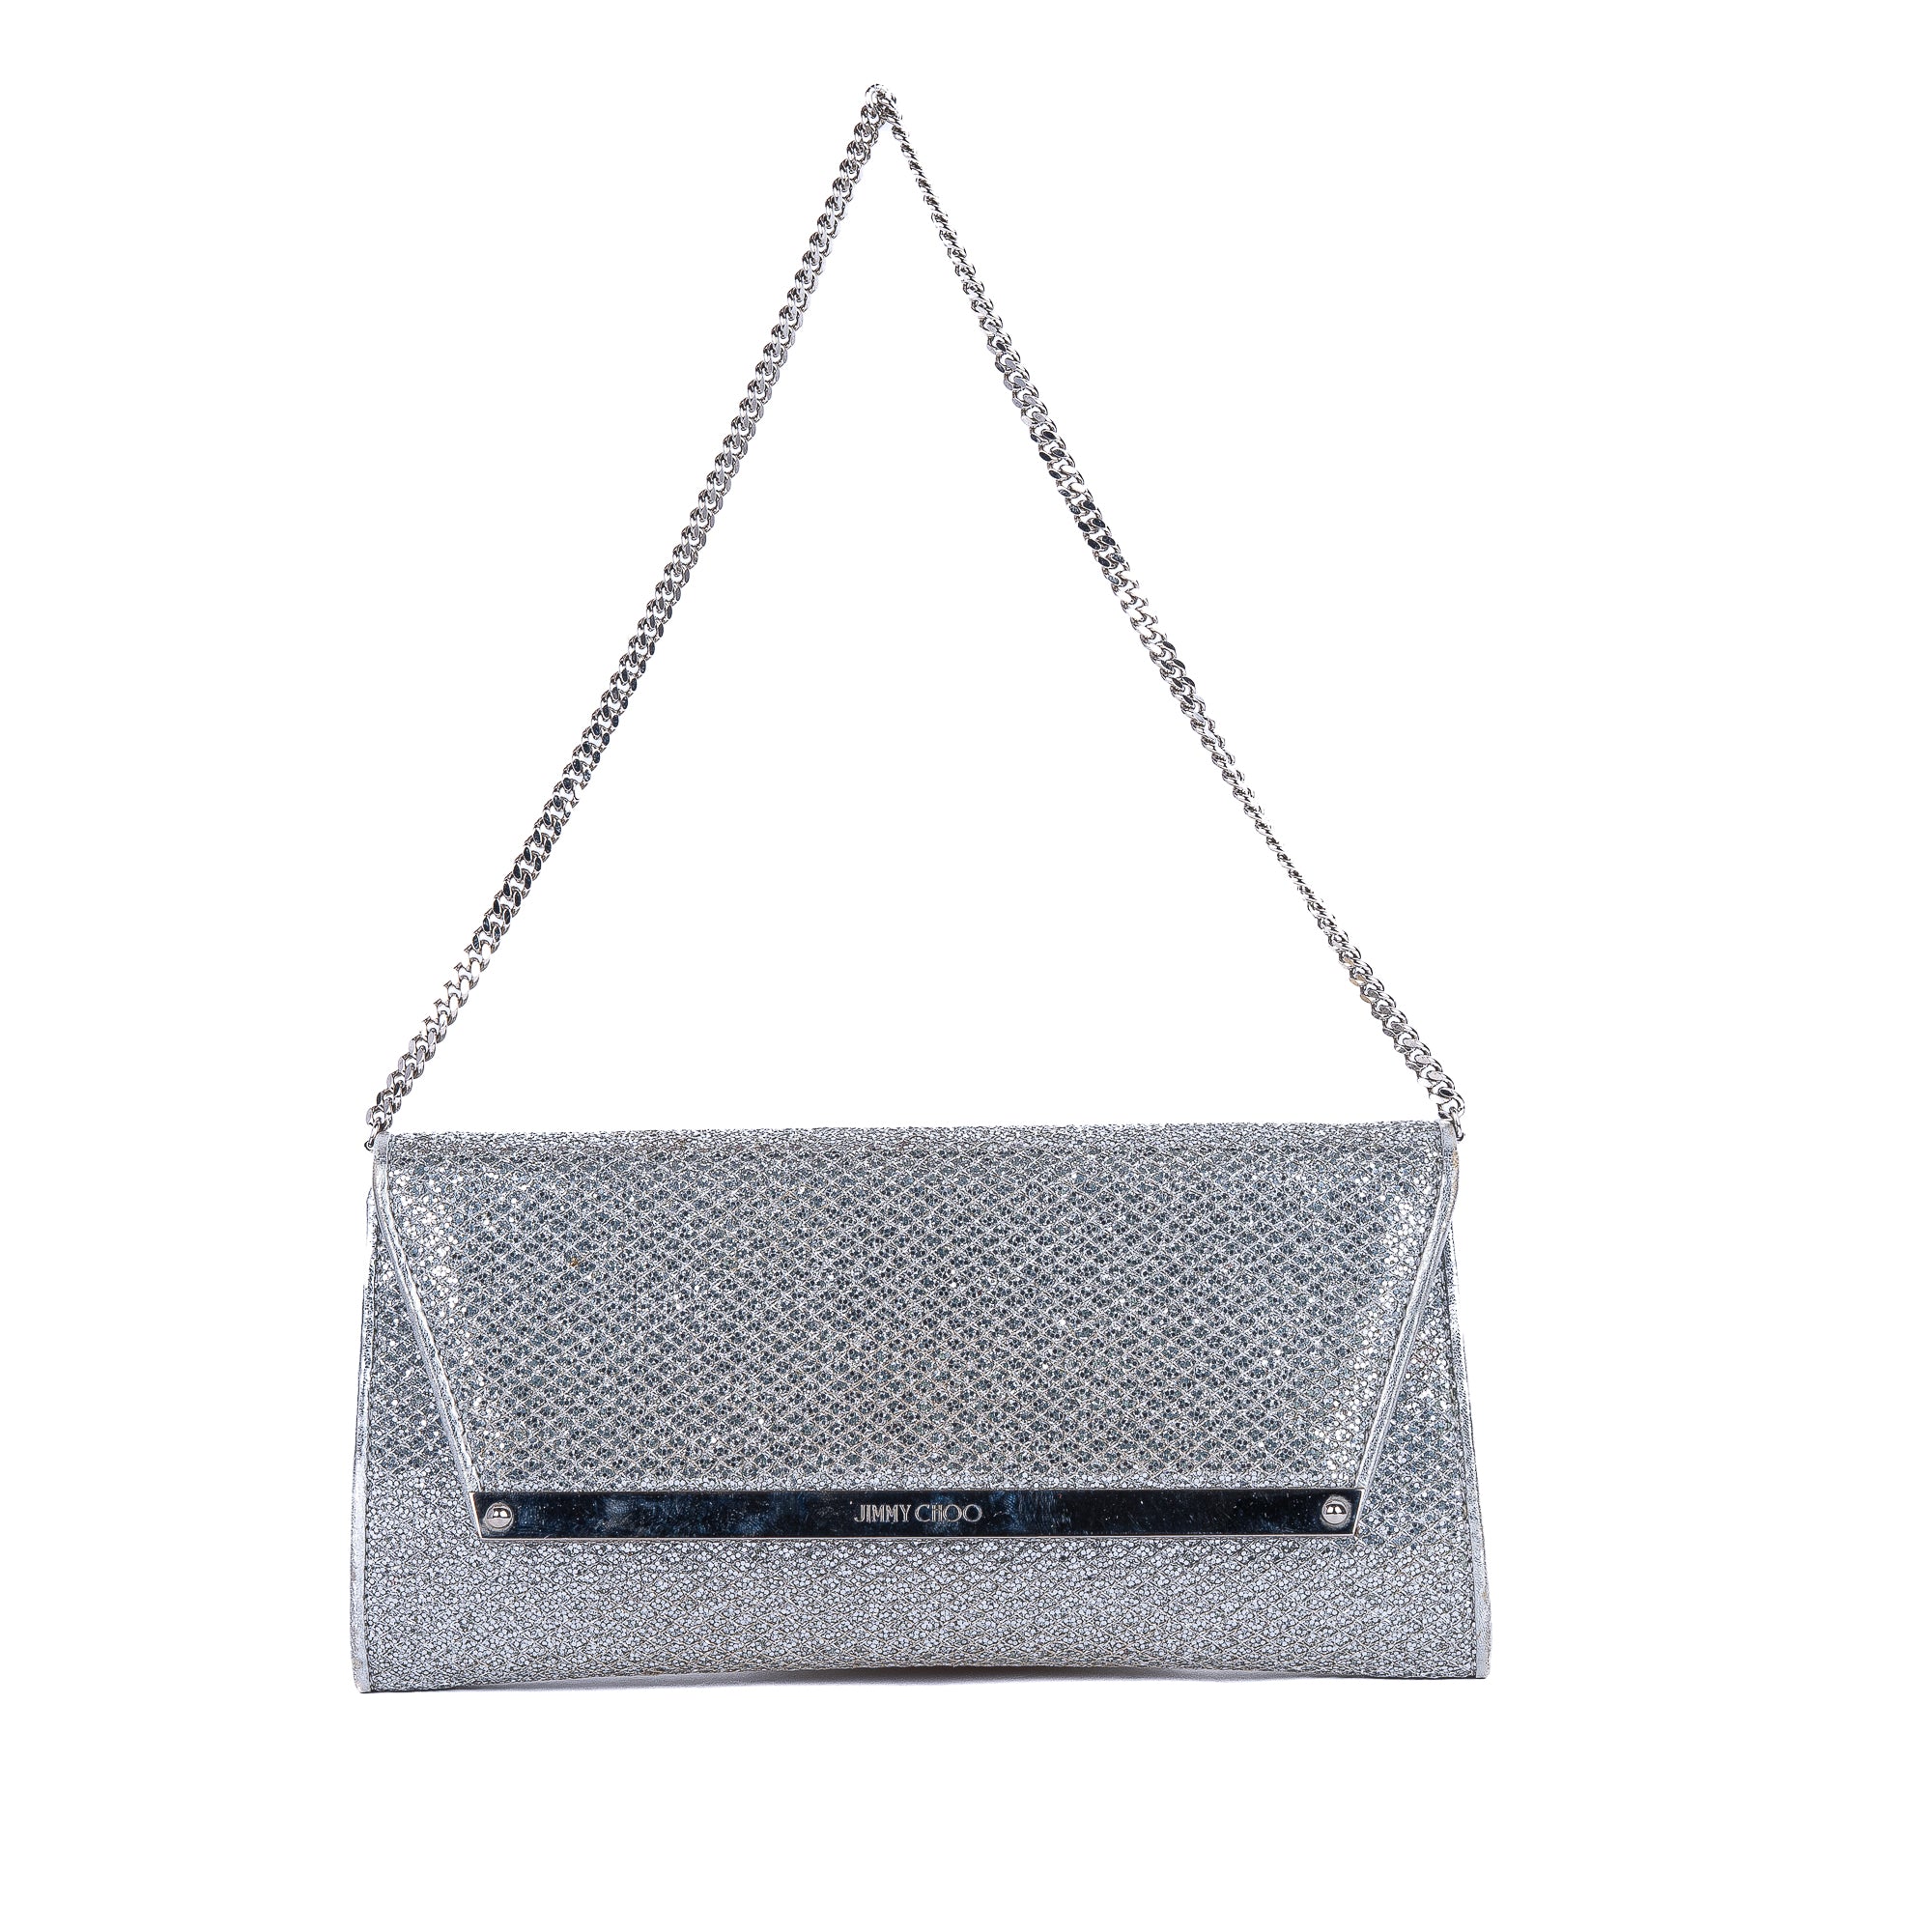 Silver Glitter Clutch Bag